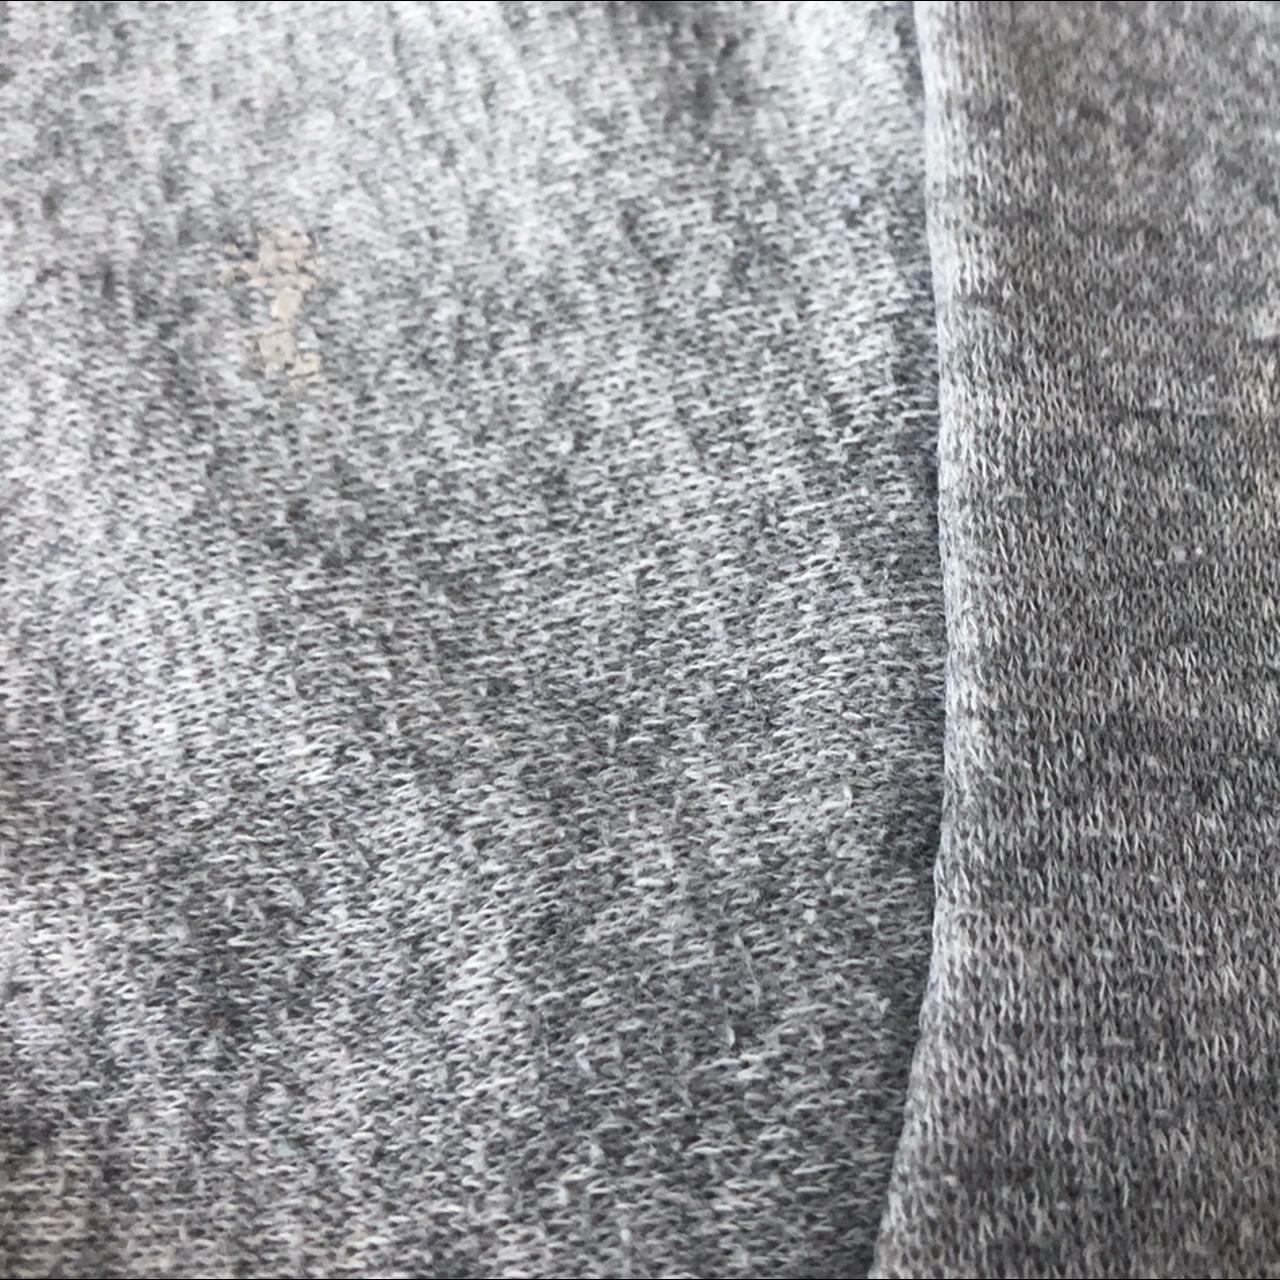 Men's Tan and Grey Sweatshirt (4)